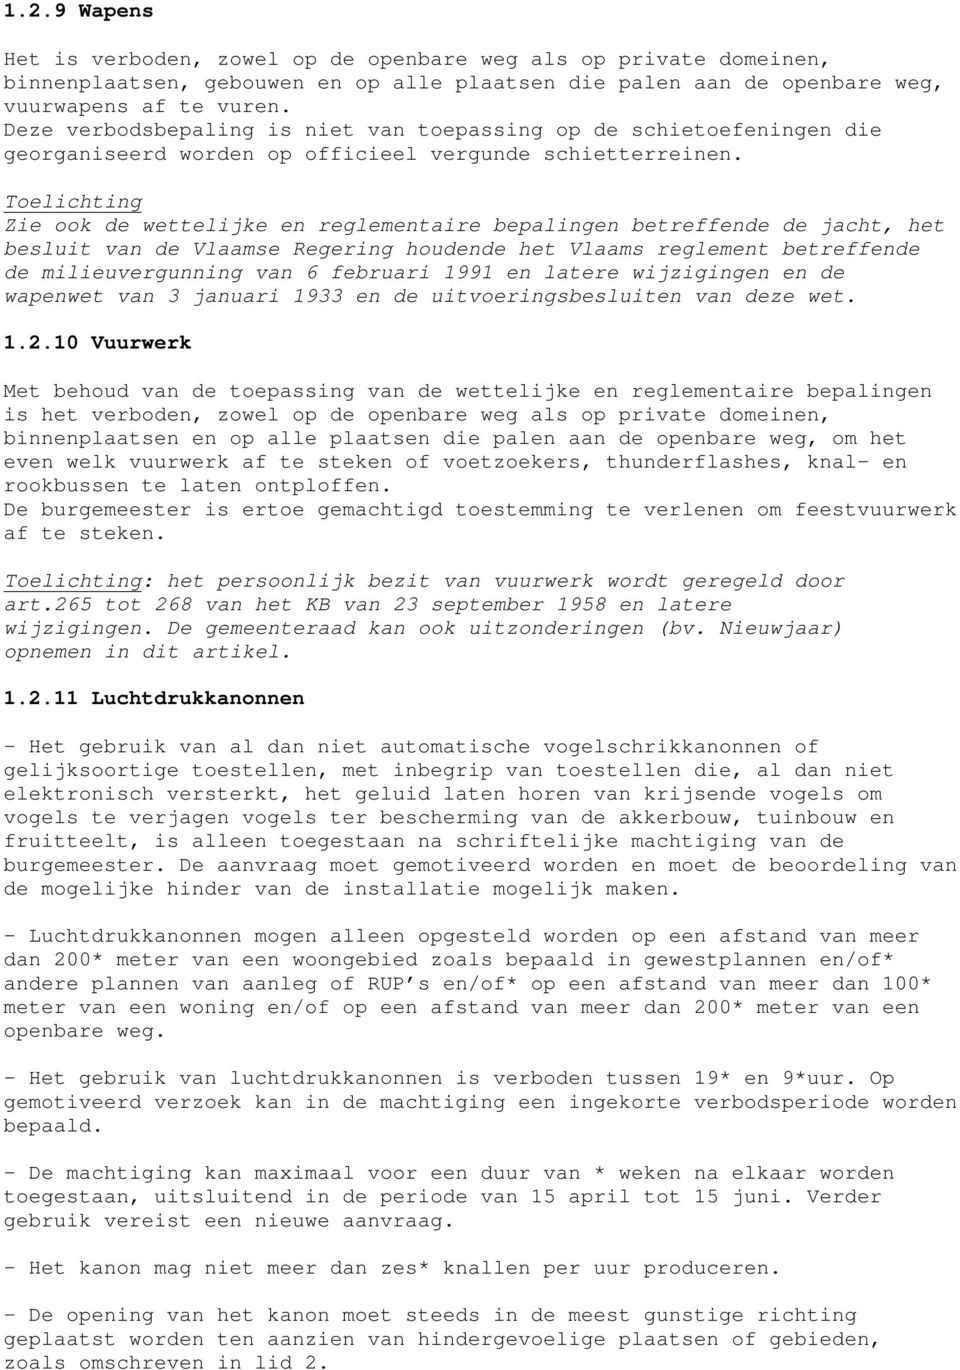 Zie ook de wettelijke en reglementaire bepalingen betreffende de jacht, het besluit van de Vlaamse Regering houdende het Vlaams reglement betreffende de milieuvergunning van 6 februari 1991 en latere